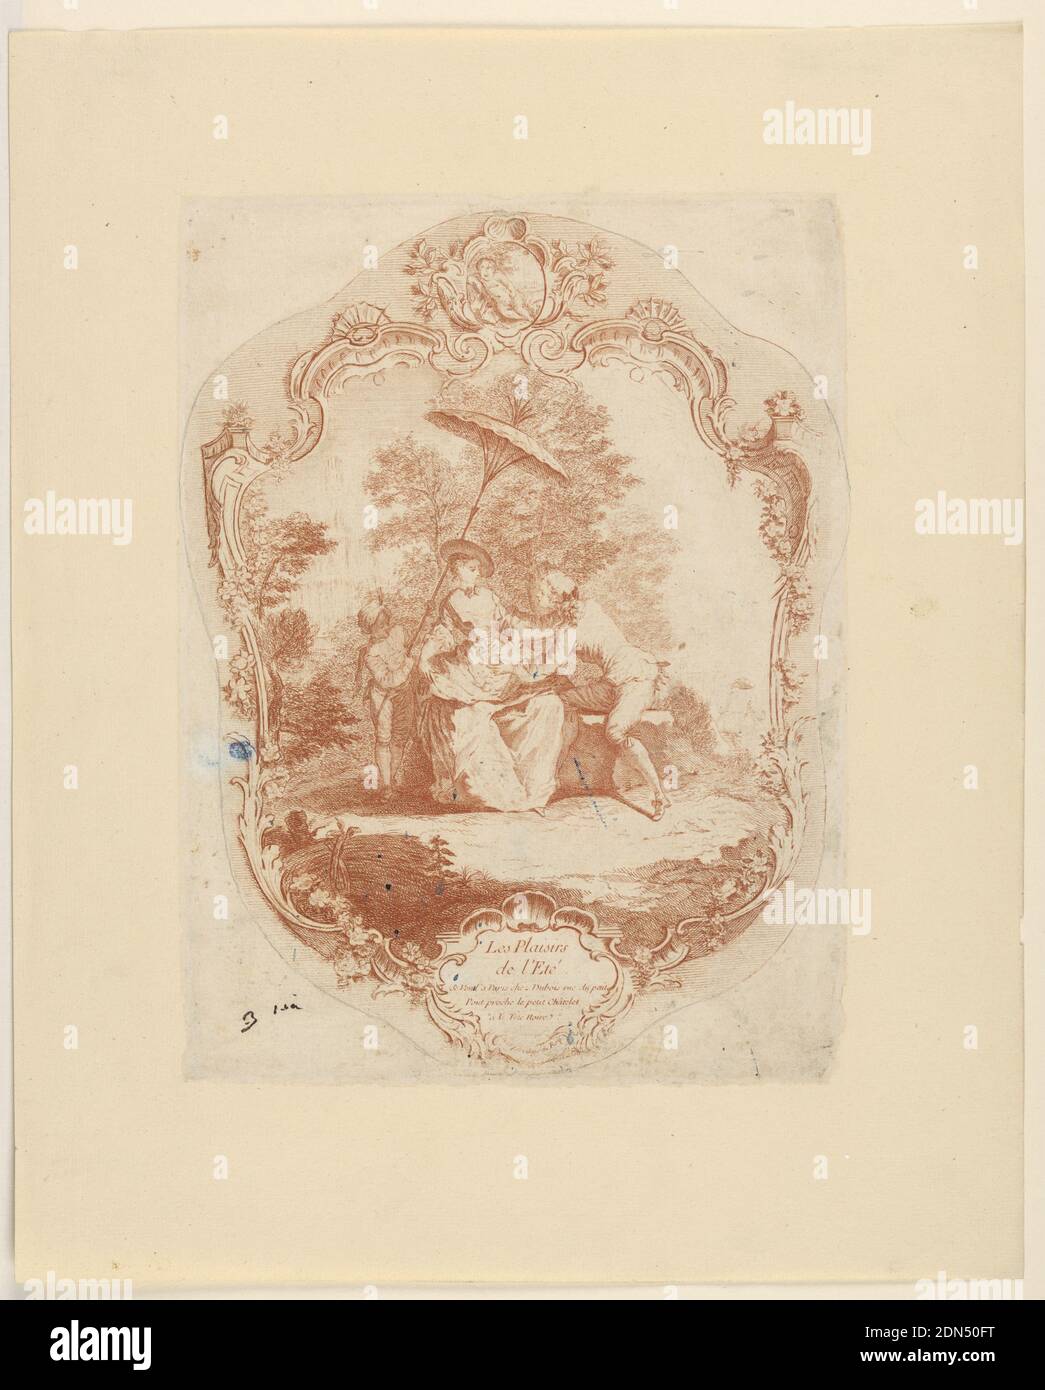 Les Plaisirs de le'Eté, Dubois, Radierung auf cremeweißem Papier, Escutcheon. Die Vergnügungen des Sommers. Ein Junge bringt ein Mädchen Äpfel. Das Mädchen sitzt in einem Park, und ein Sklavenjunge hält einen Regenschirm über ihr. Ein schlafend Kind ist oben., ca. 1725, Kostüm & Accessoires, Print Stockfoto